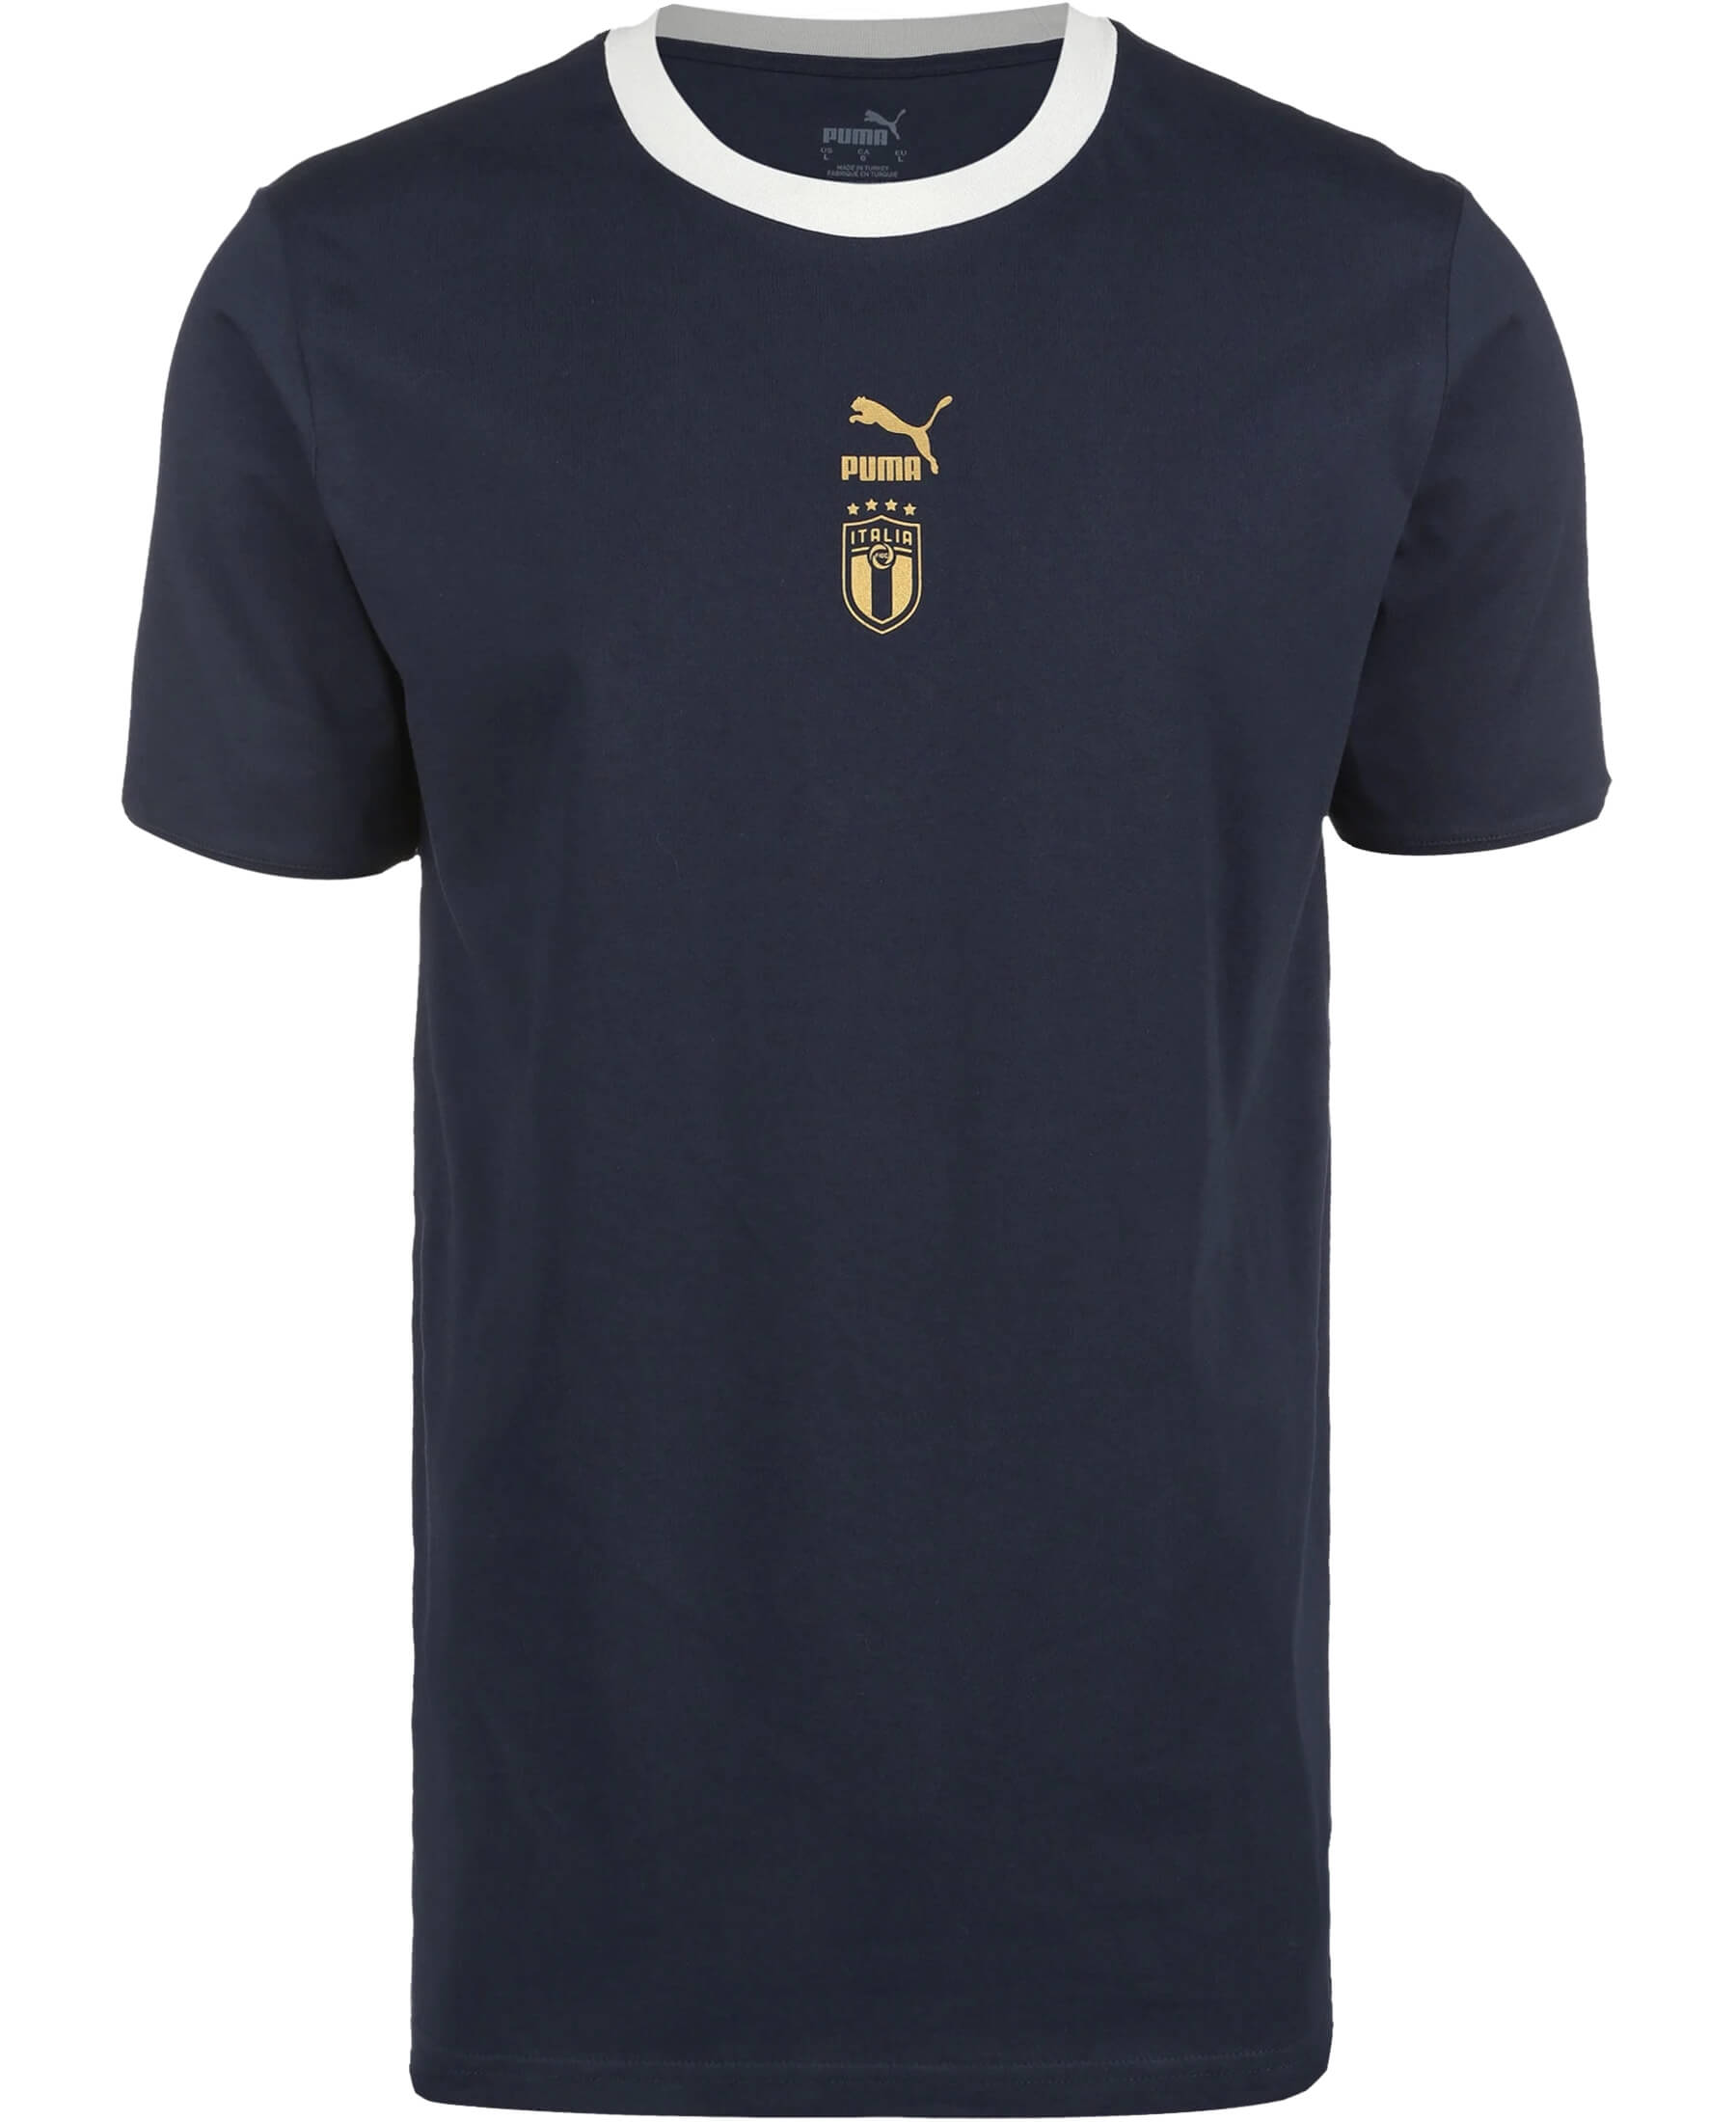 PUMA Italien FIGC T-Shirt - Offizielles Tailored for Sports T-Shirt der italienischen Nationalmannschaft. Stilvoll und bequem für sportliche Aktivitäten oder den lässigen Look. Unterstützen Sie die Squadra Azzurra mit diesem hochwertigen T-Shirt. Jetzt im SHOP4TEAMSPORT Onlineshop erhältlich!